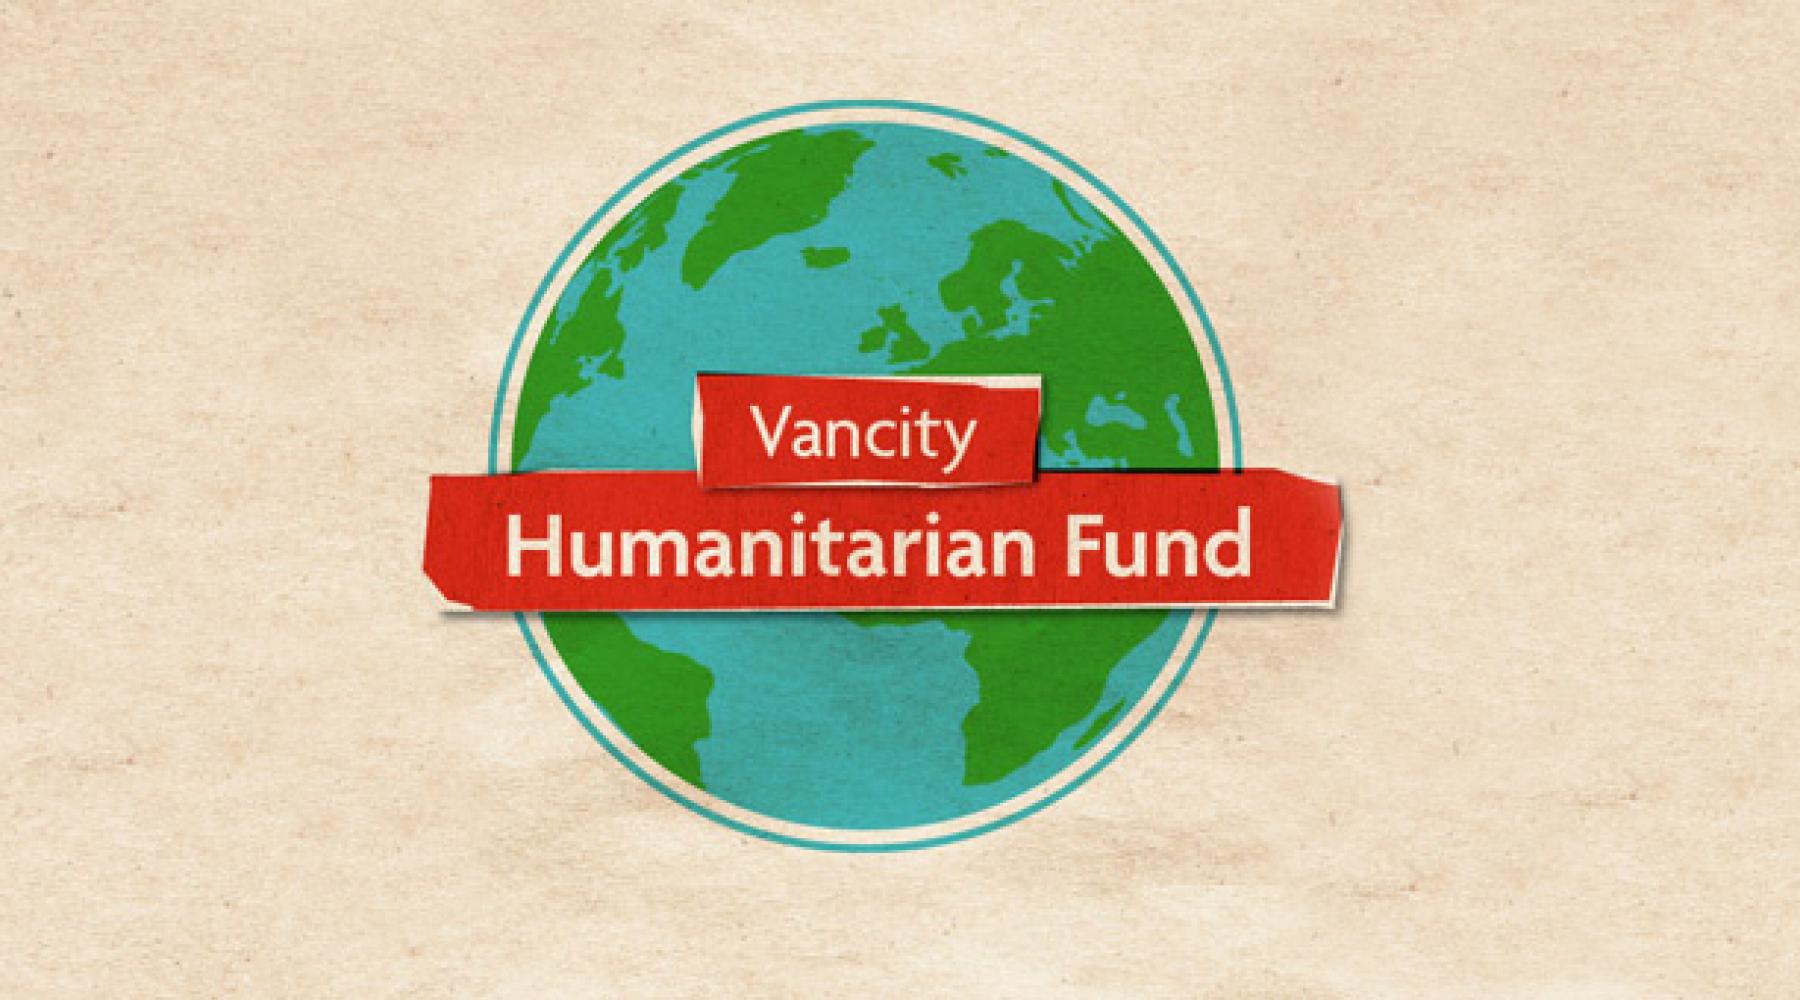 Vancity Humanitarian Fund globe image